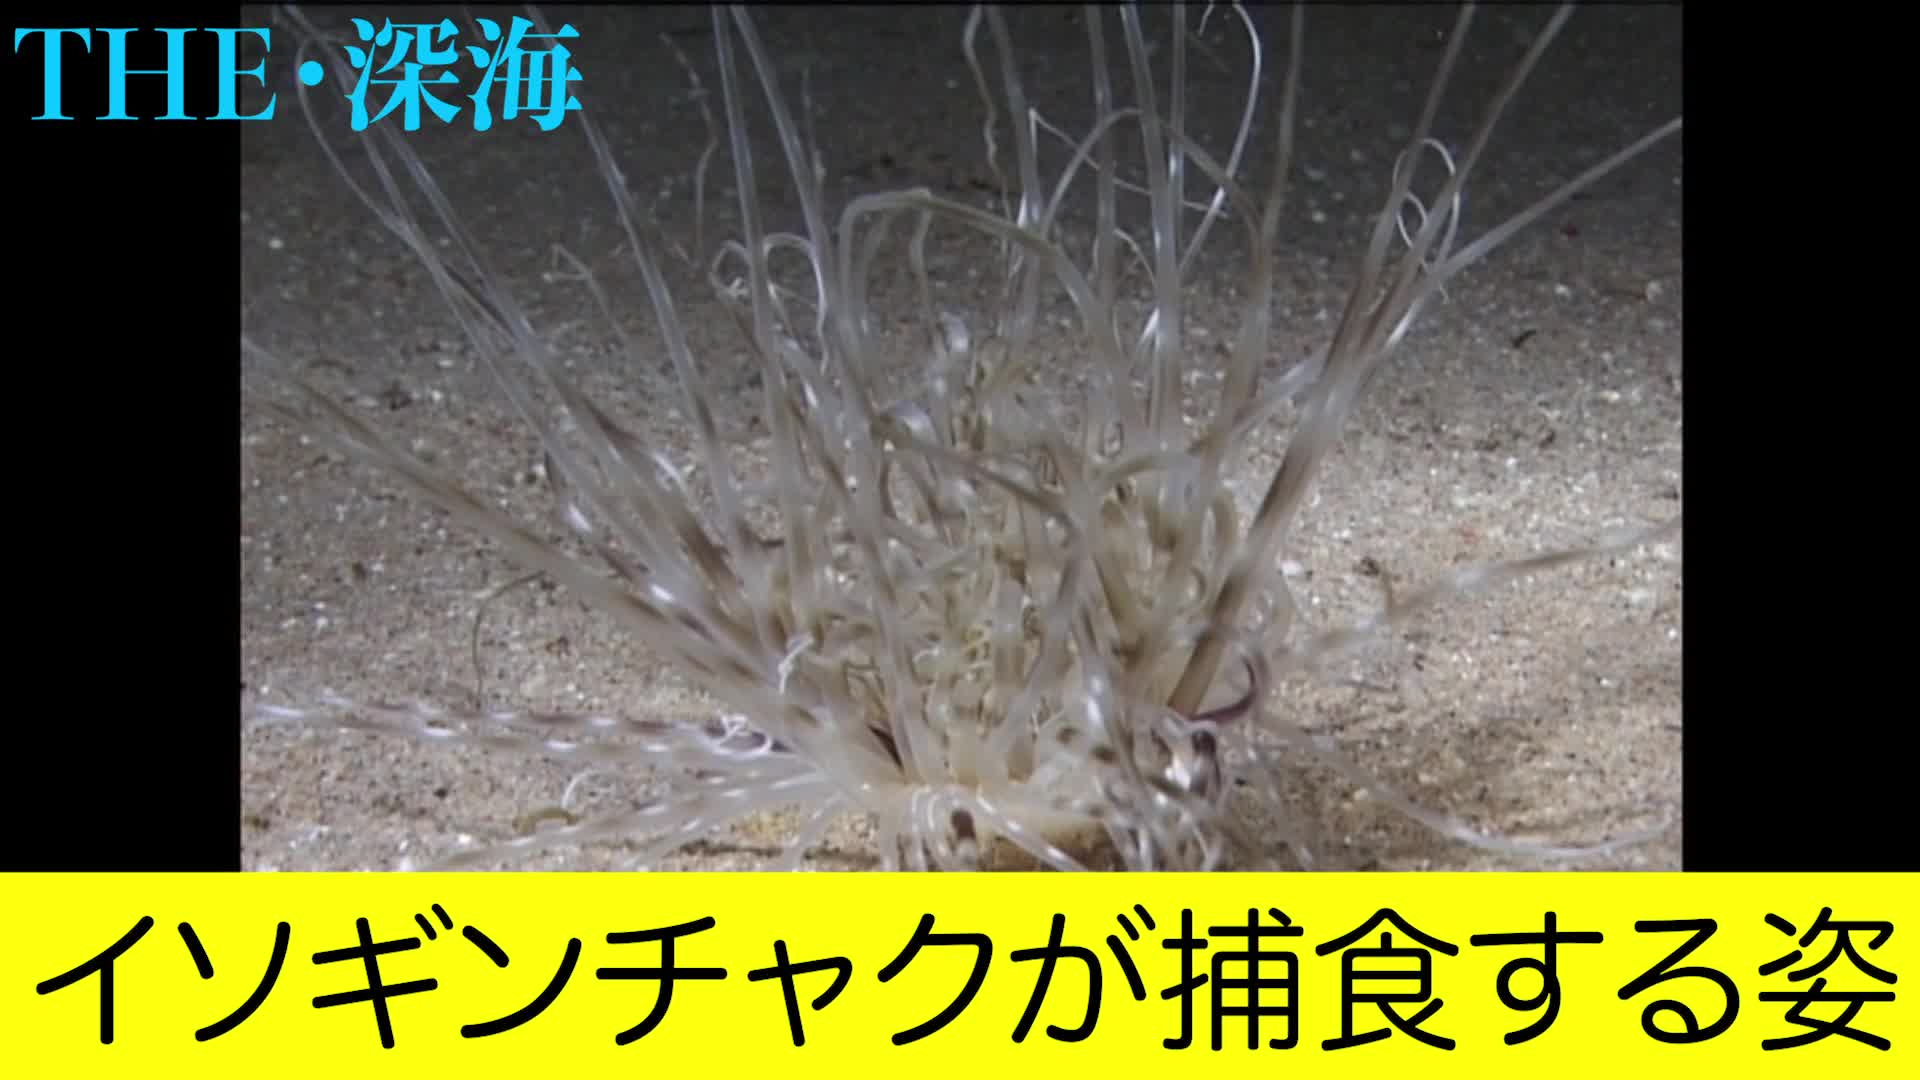 イソギンチャクが捕食する姿 Videocash ビデオキャッシュ Yahoo Japan